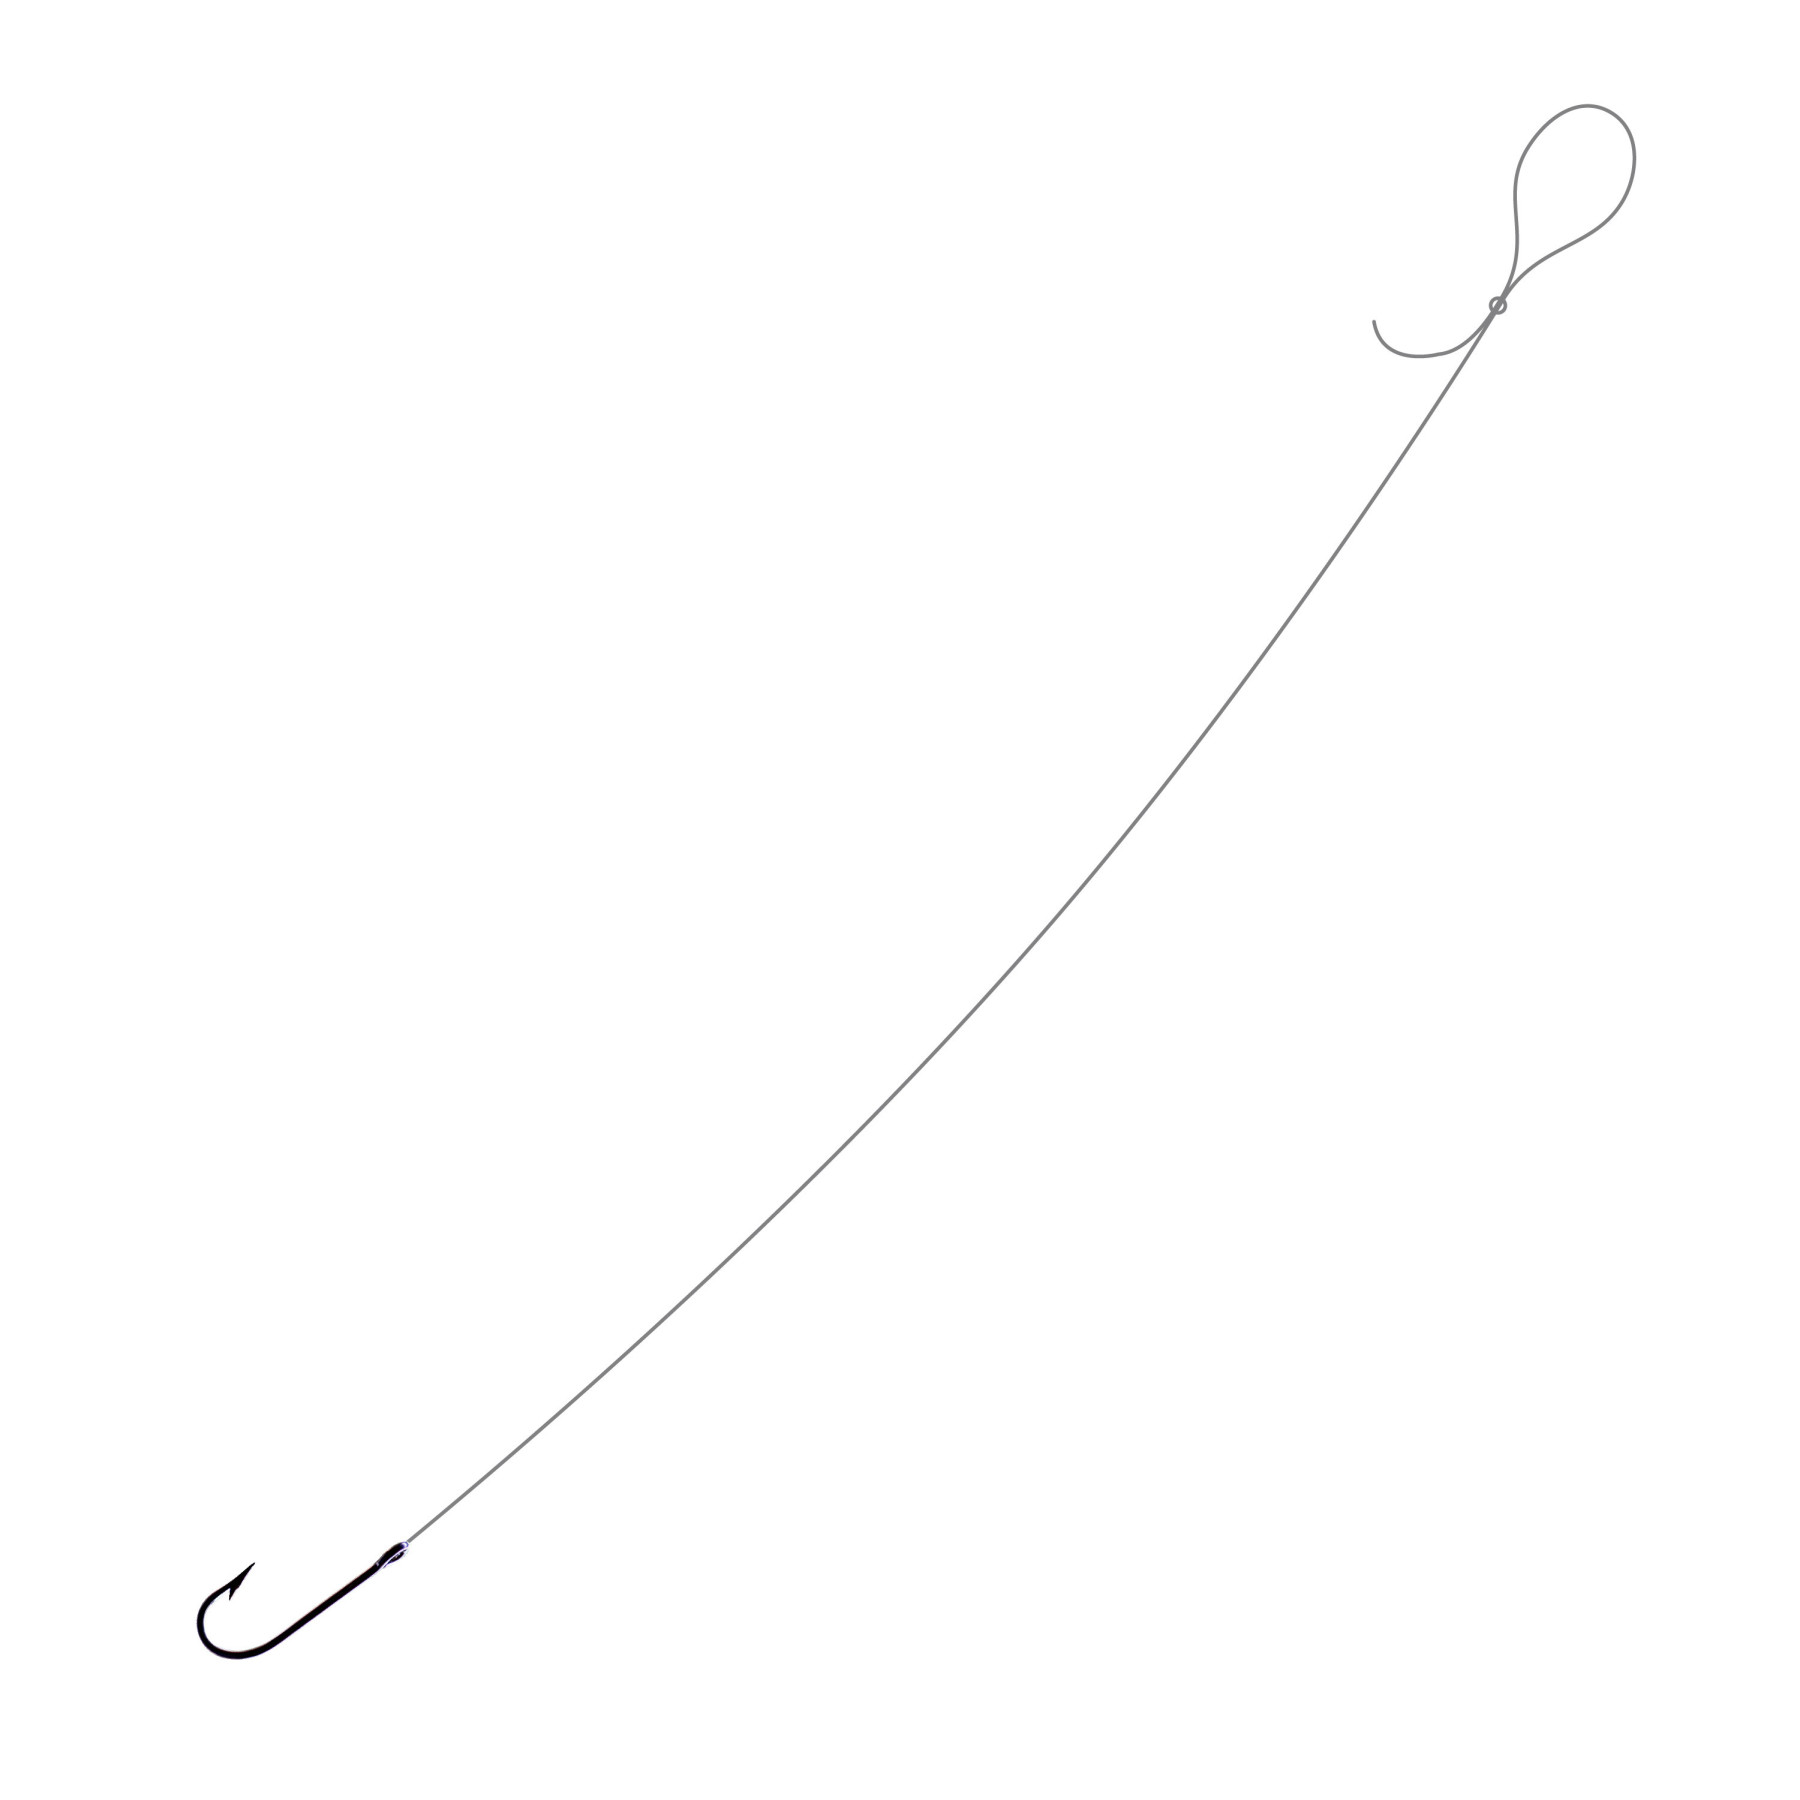 Qareb Single Hook Rig 0.40mm